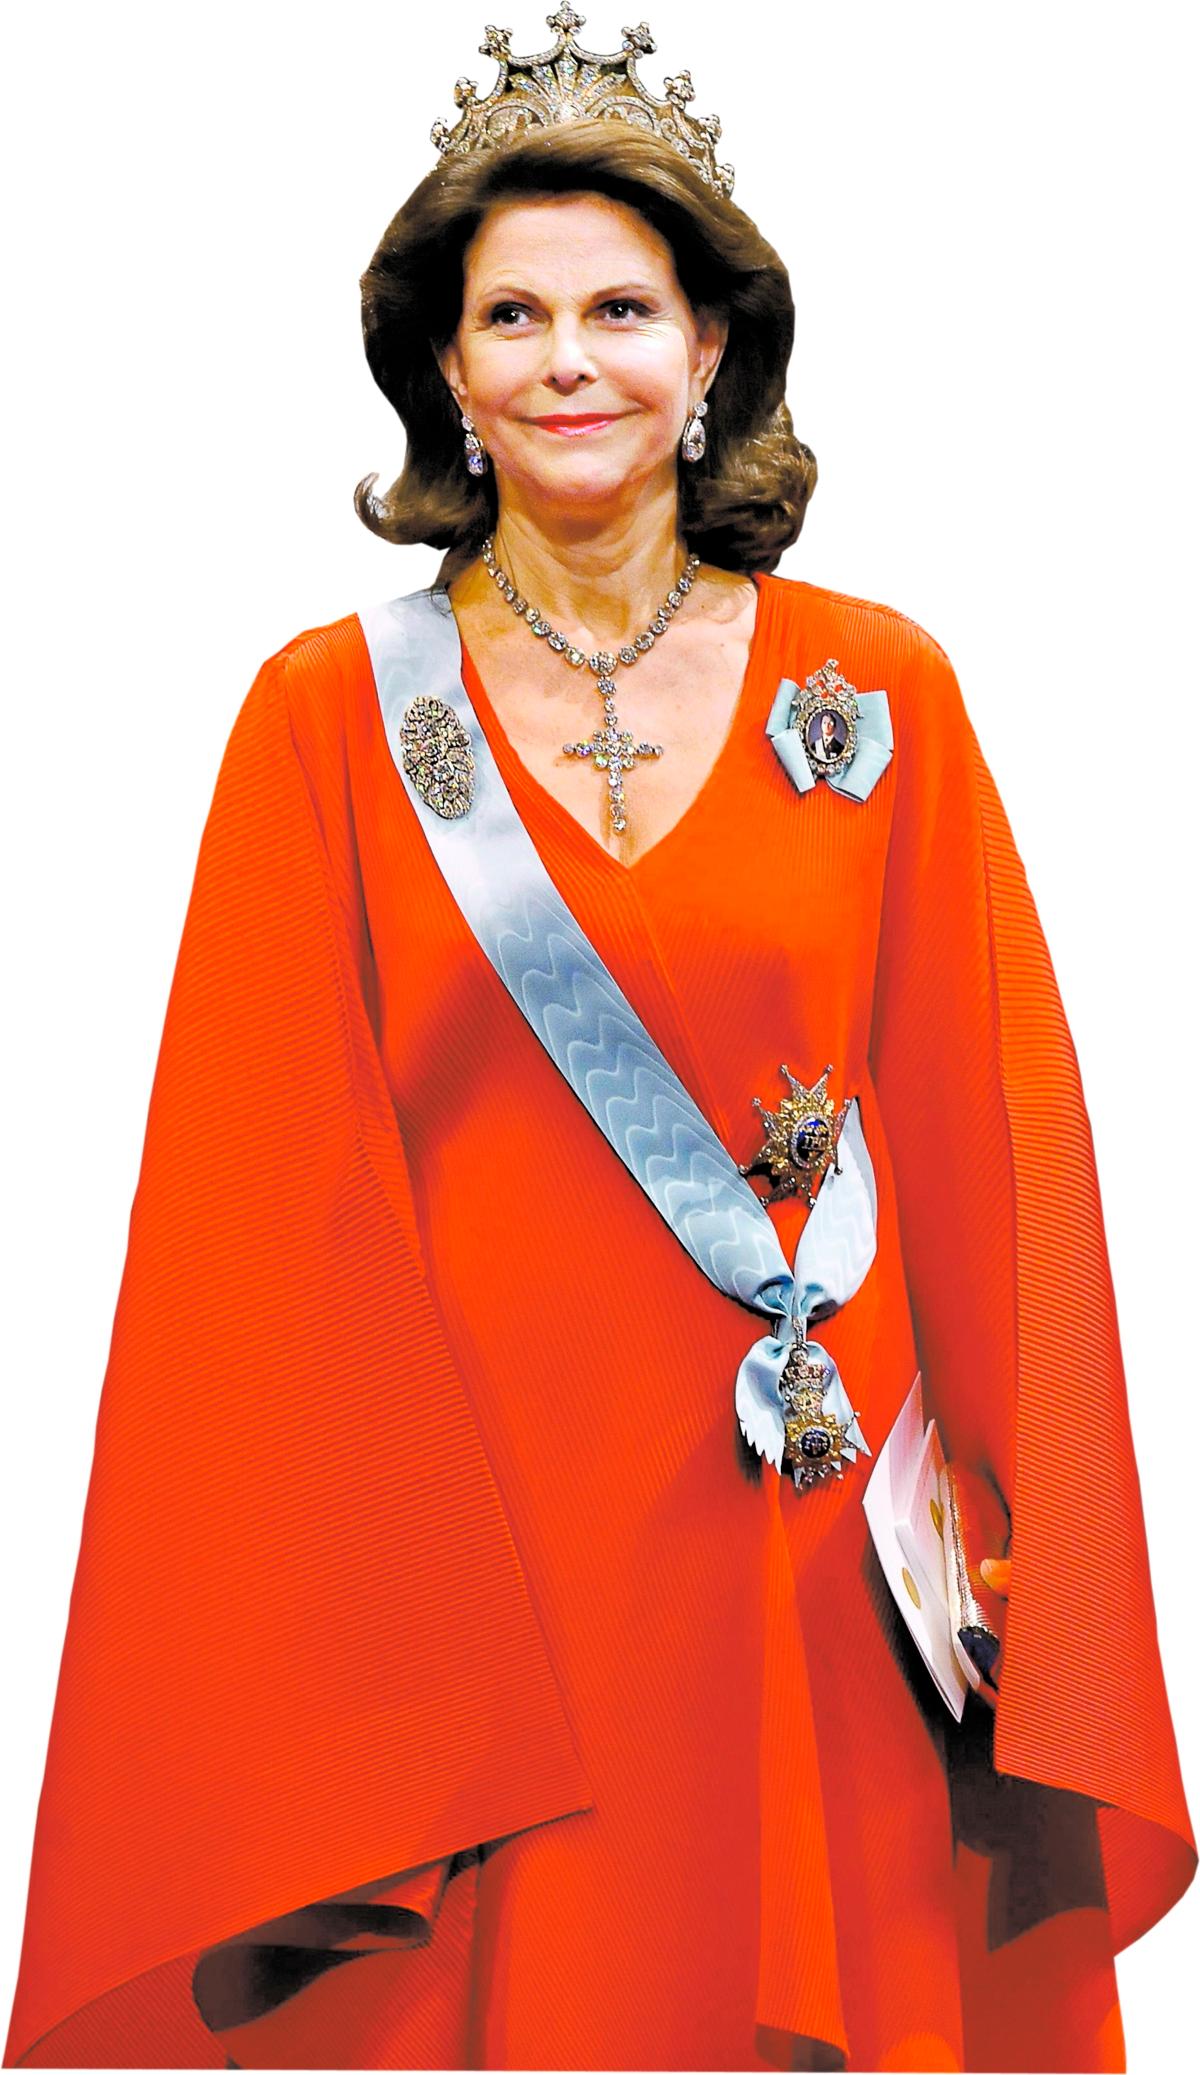 Nobelfesten i år 63-åriga Silvia glider in på årets Nobelmiddag iklädd en röd klänning. Hon ser lika ung ut som alltid. Nu påstås det att Silvia varje år åker till Brasilien inför Nobelfesten för skönhetsingrepp.